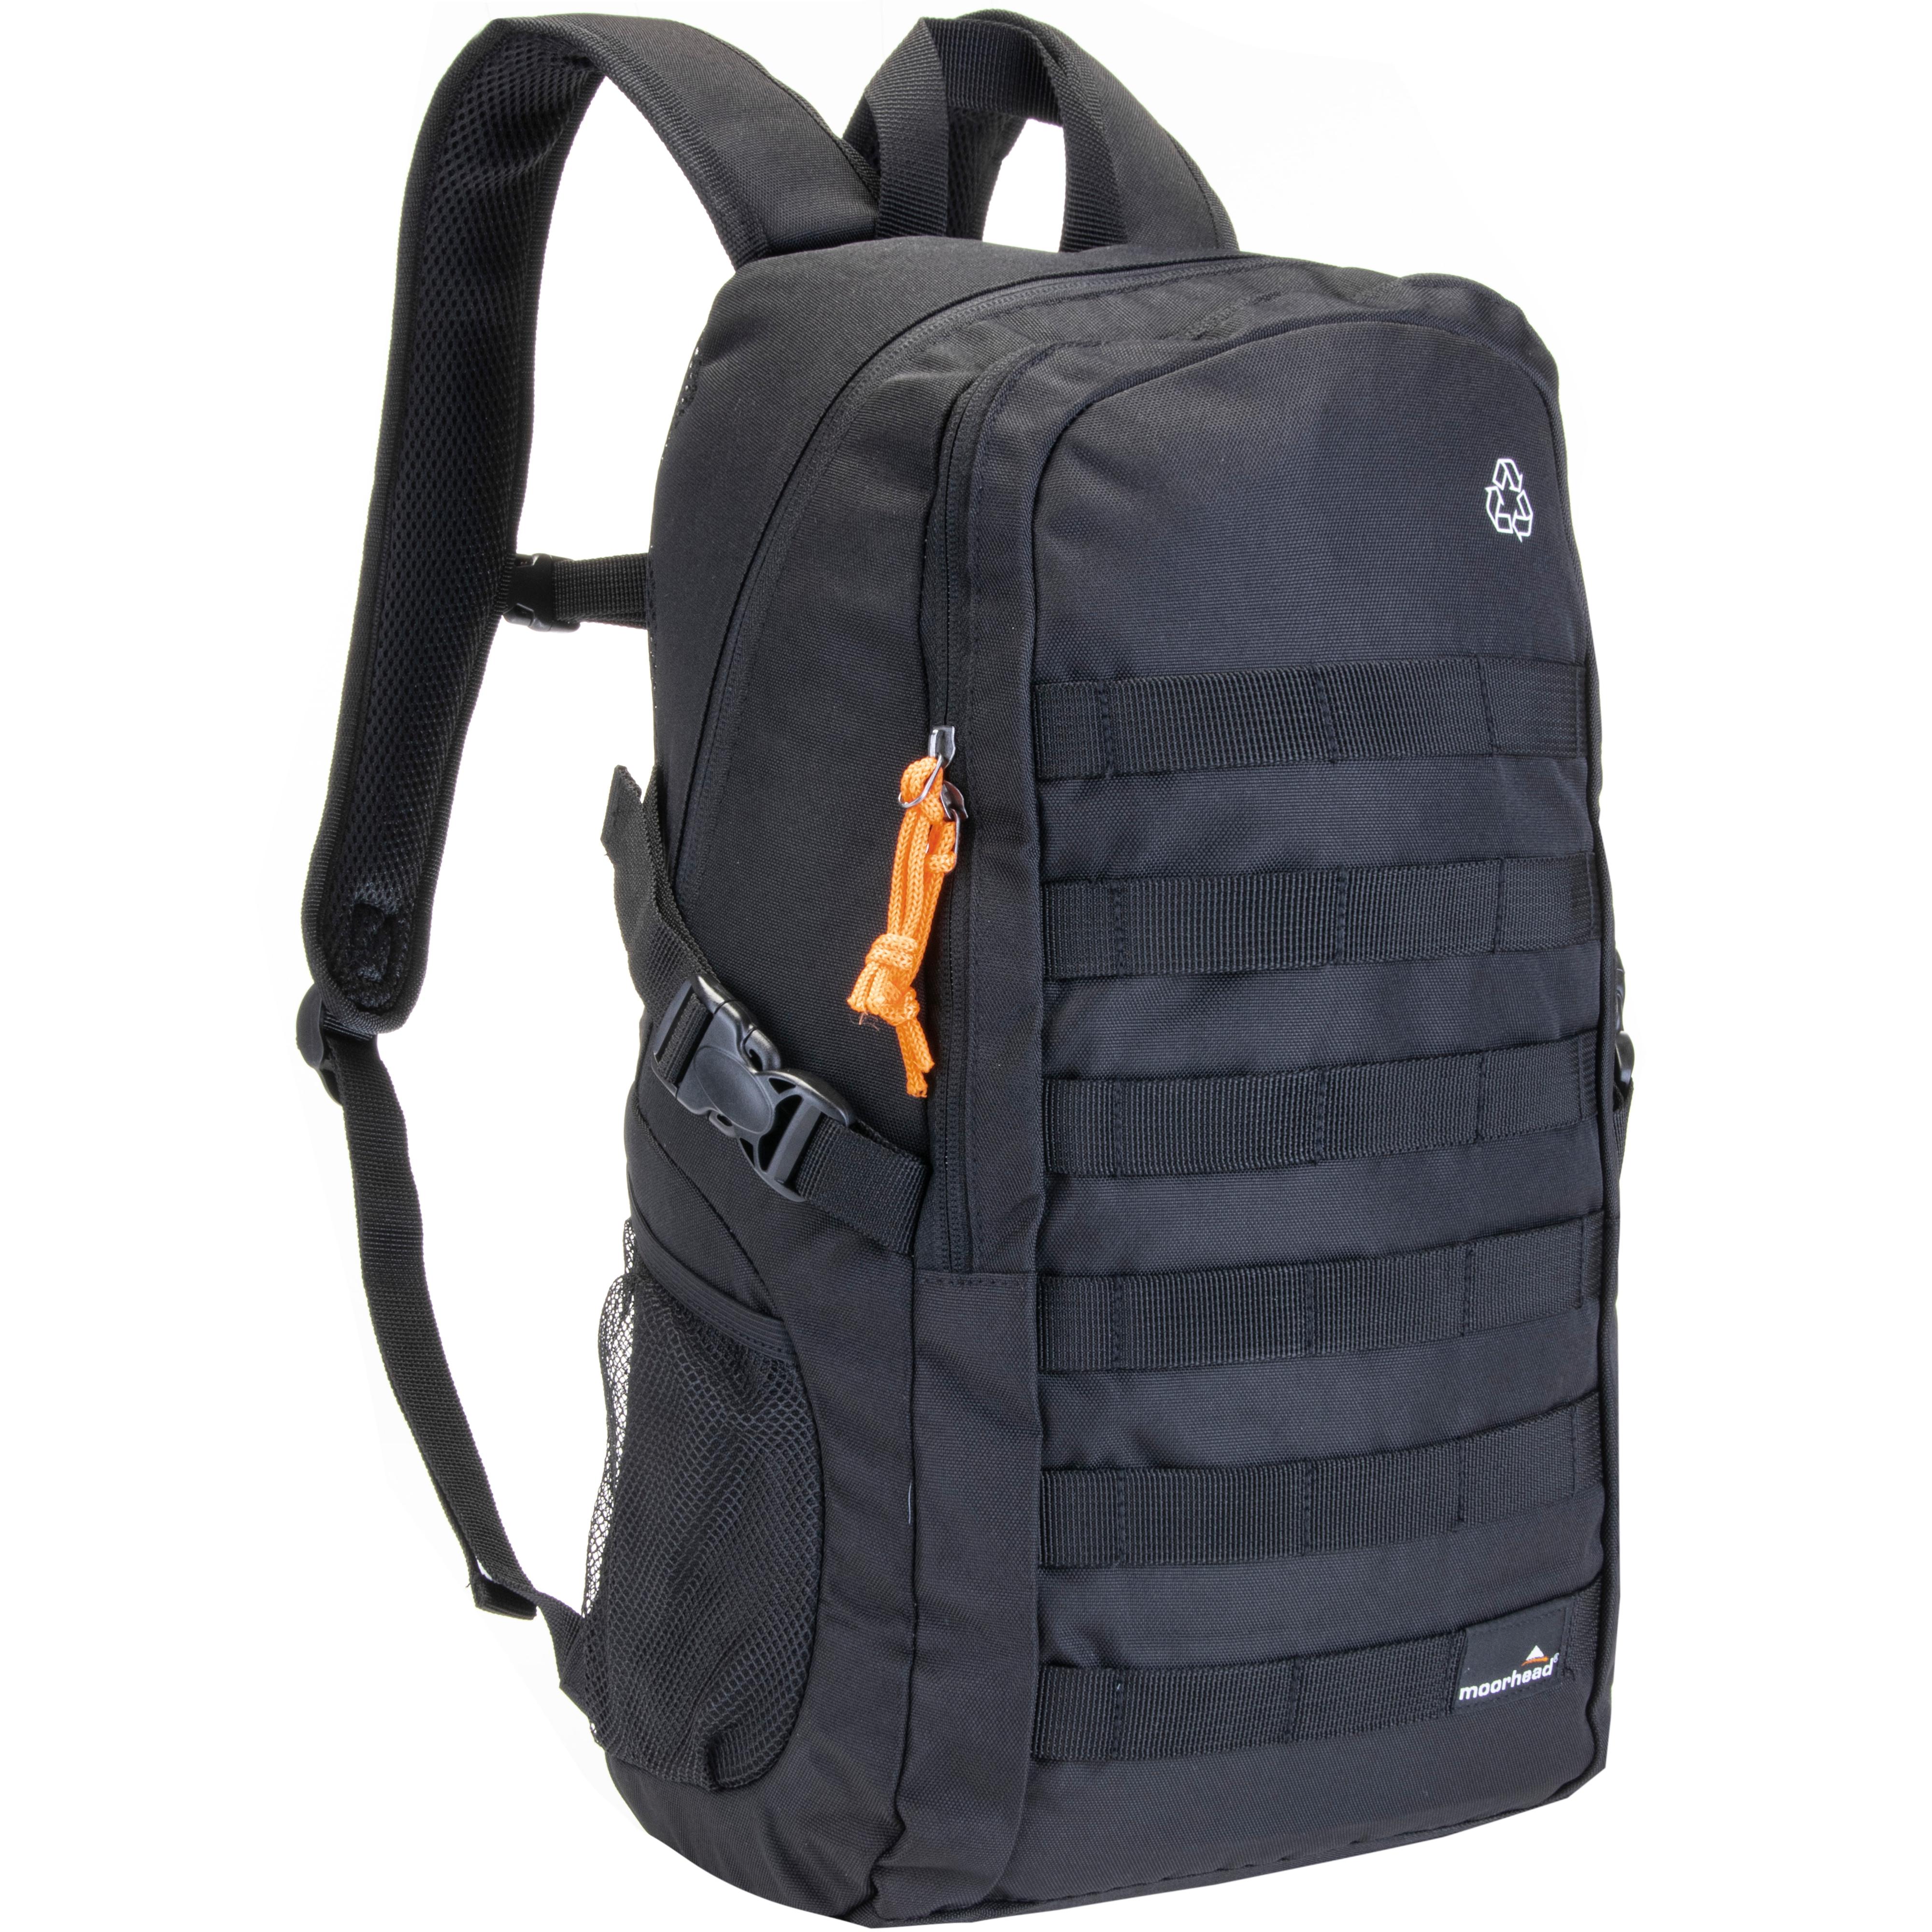 Image of moorhead Backpack Daypack